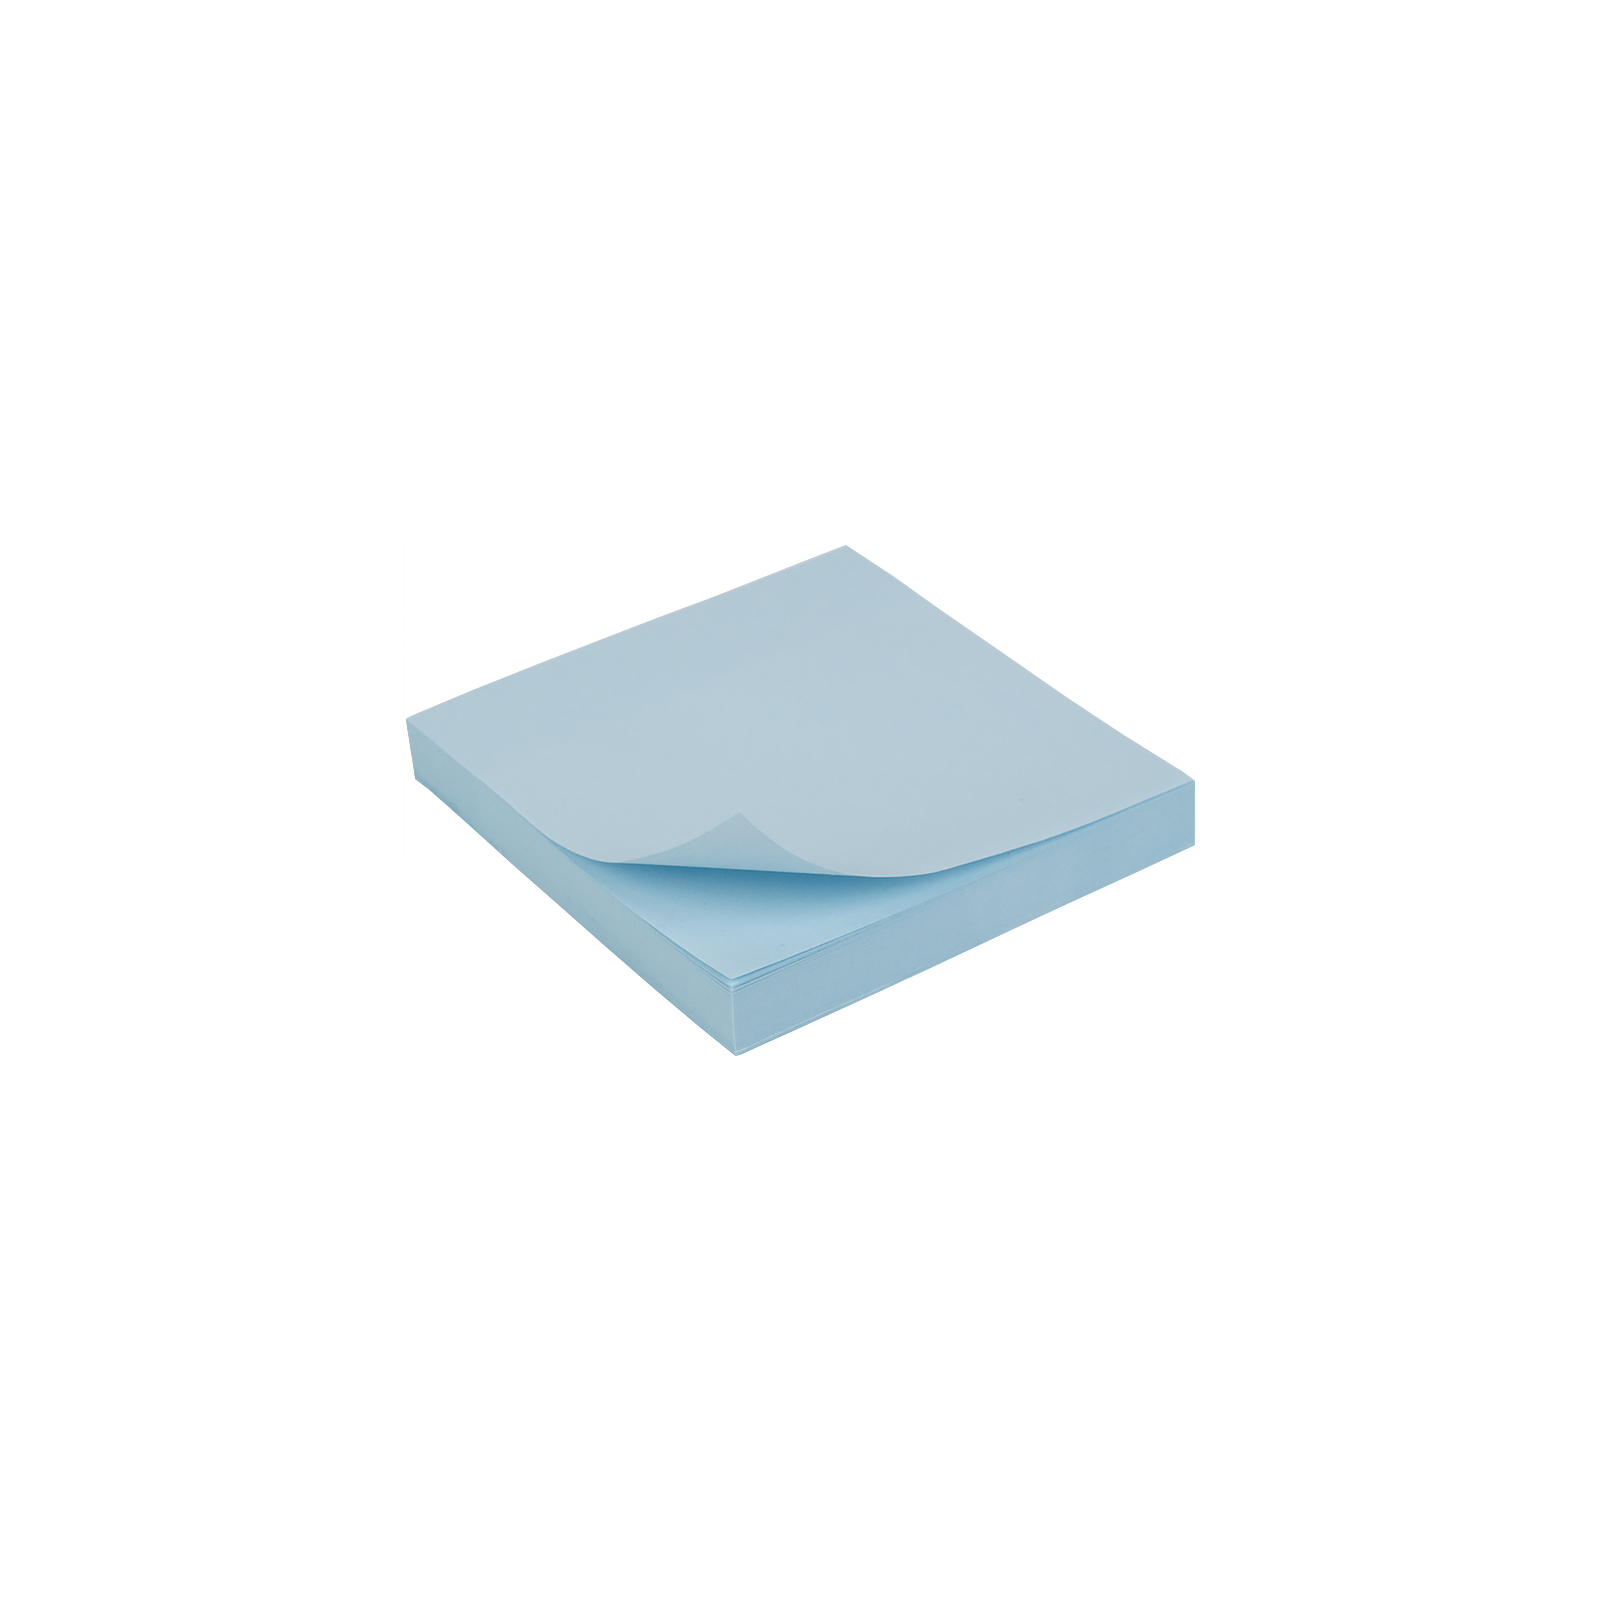 Бумага для заметок Axent 75x75мм, 100 листов синий (D3314-04)